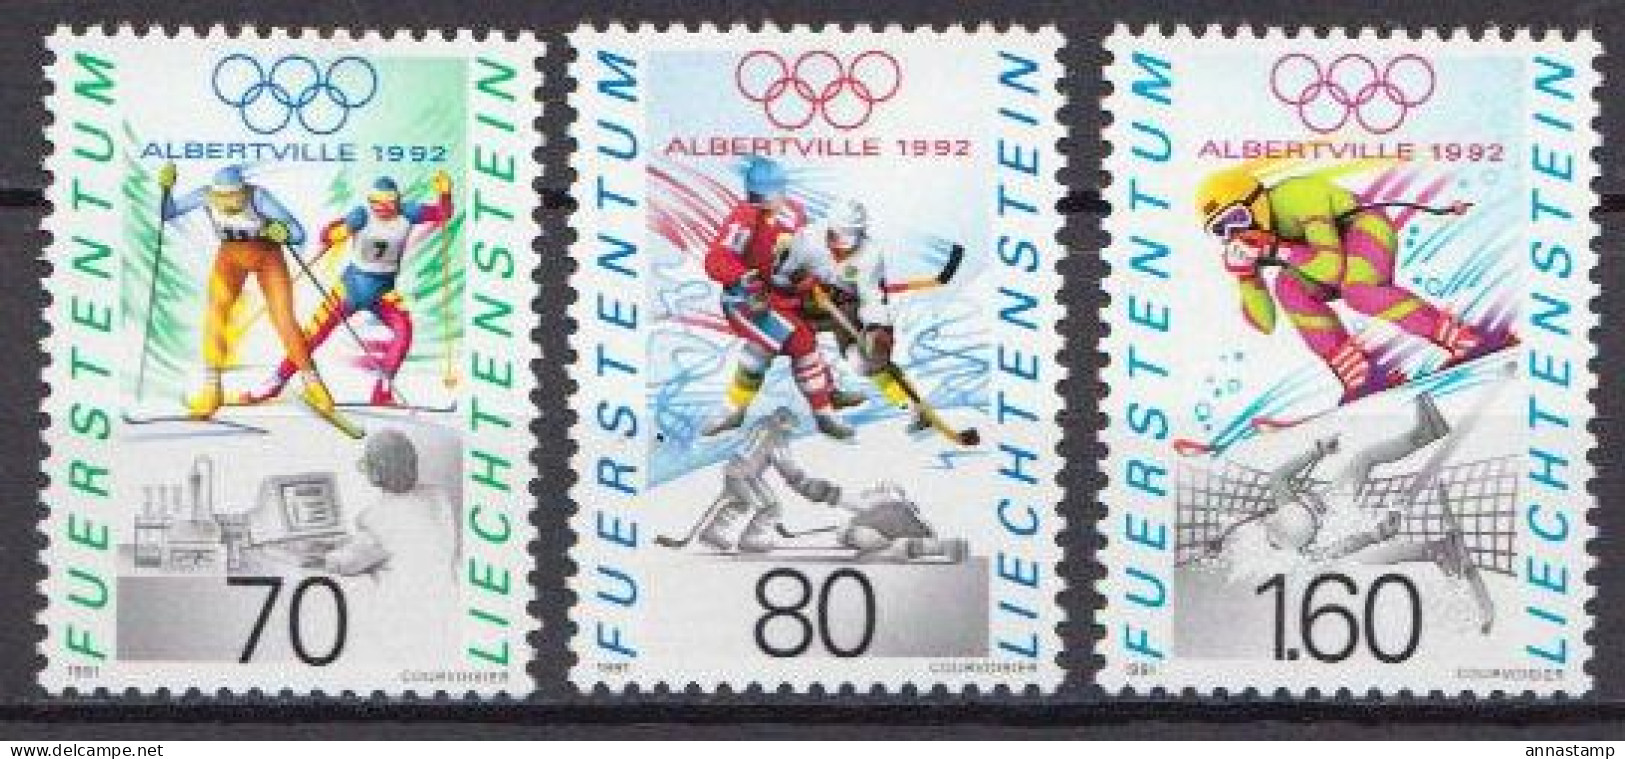 Liechtenstein MNH Set - Hiver 1992: Albertville